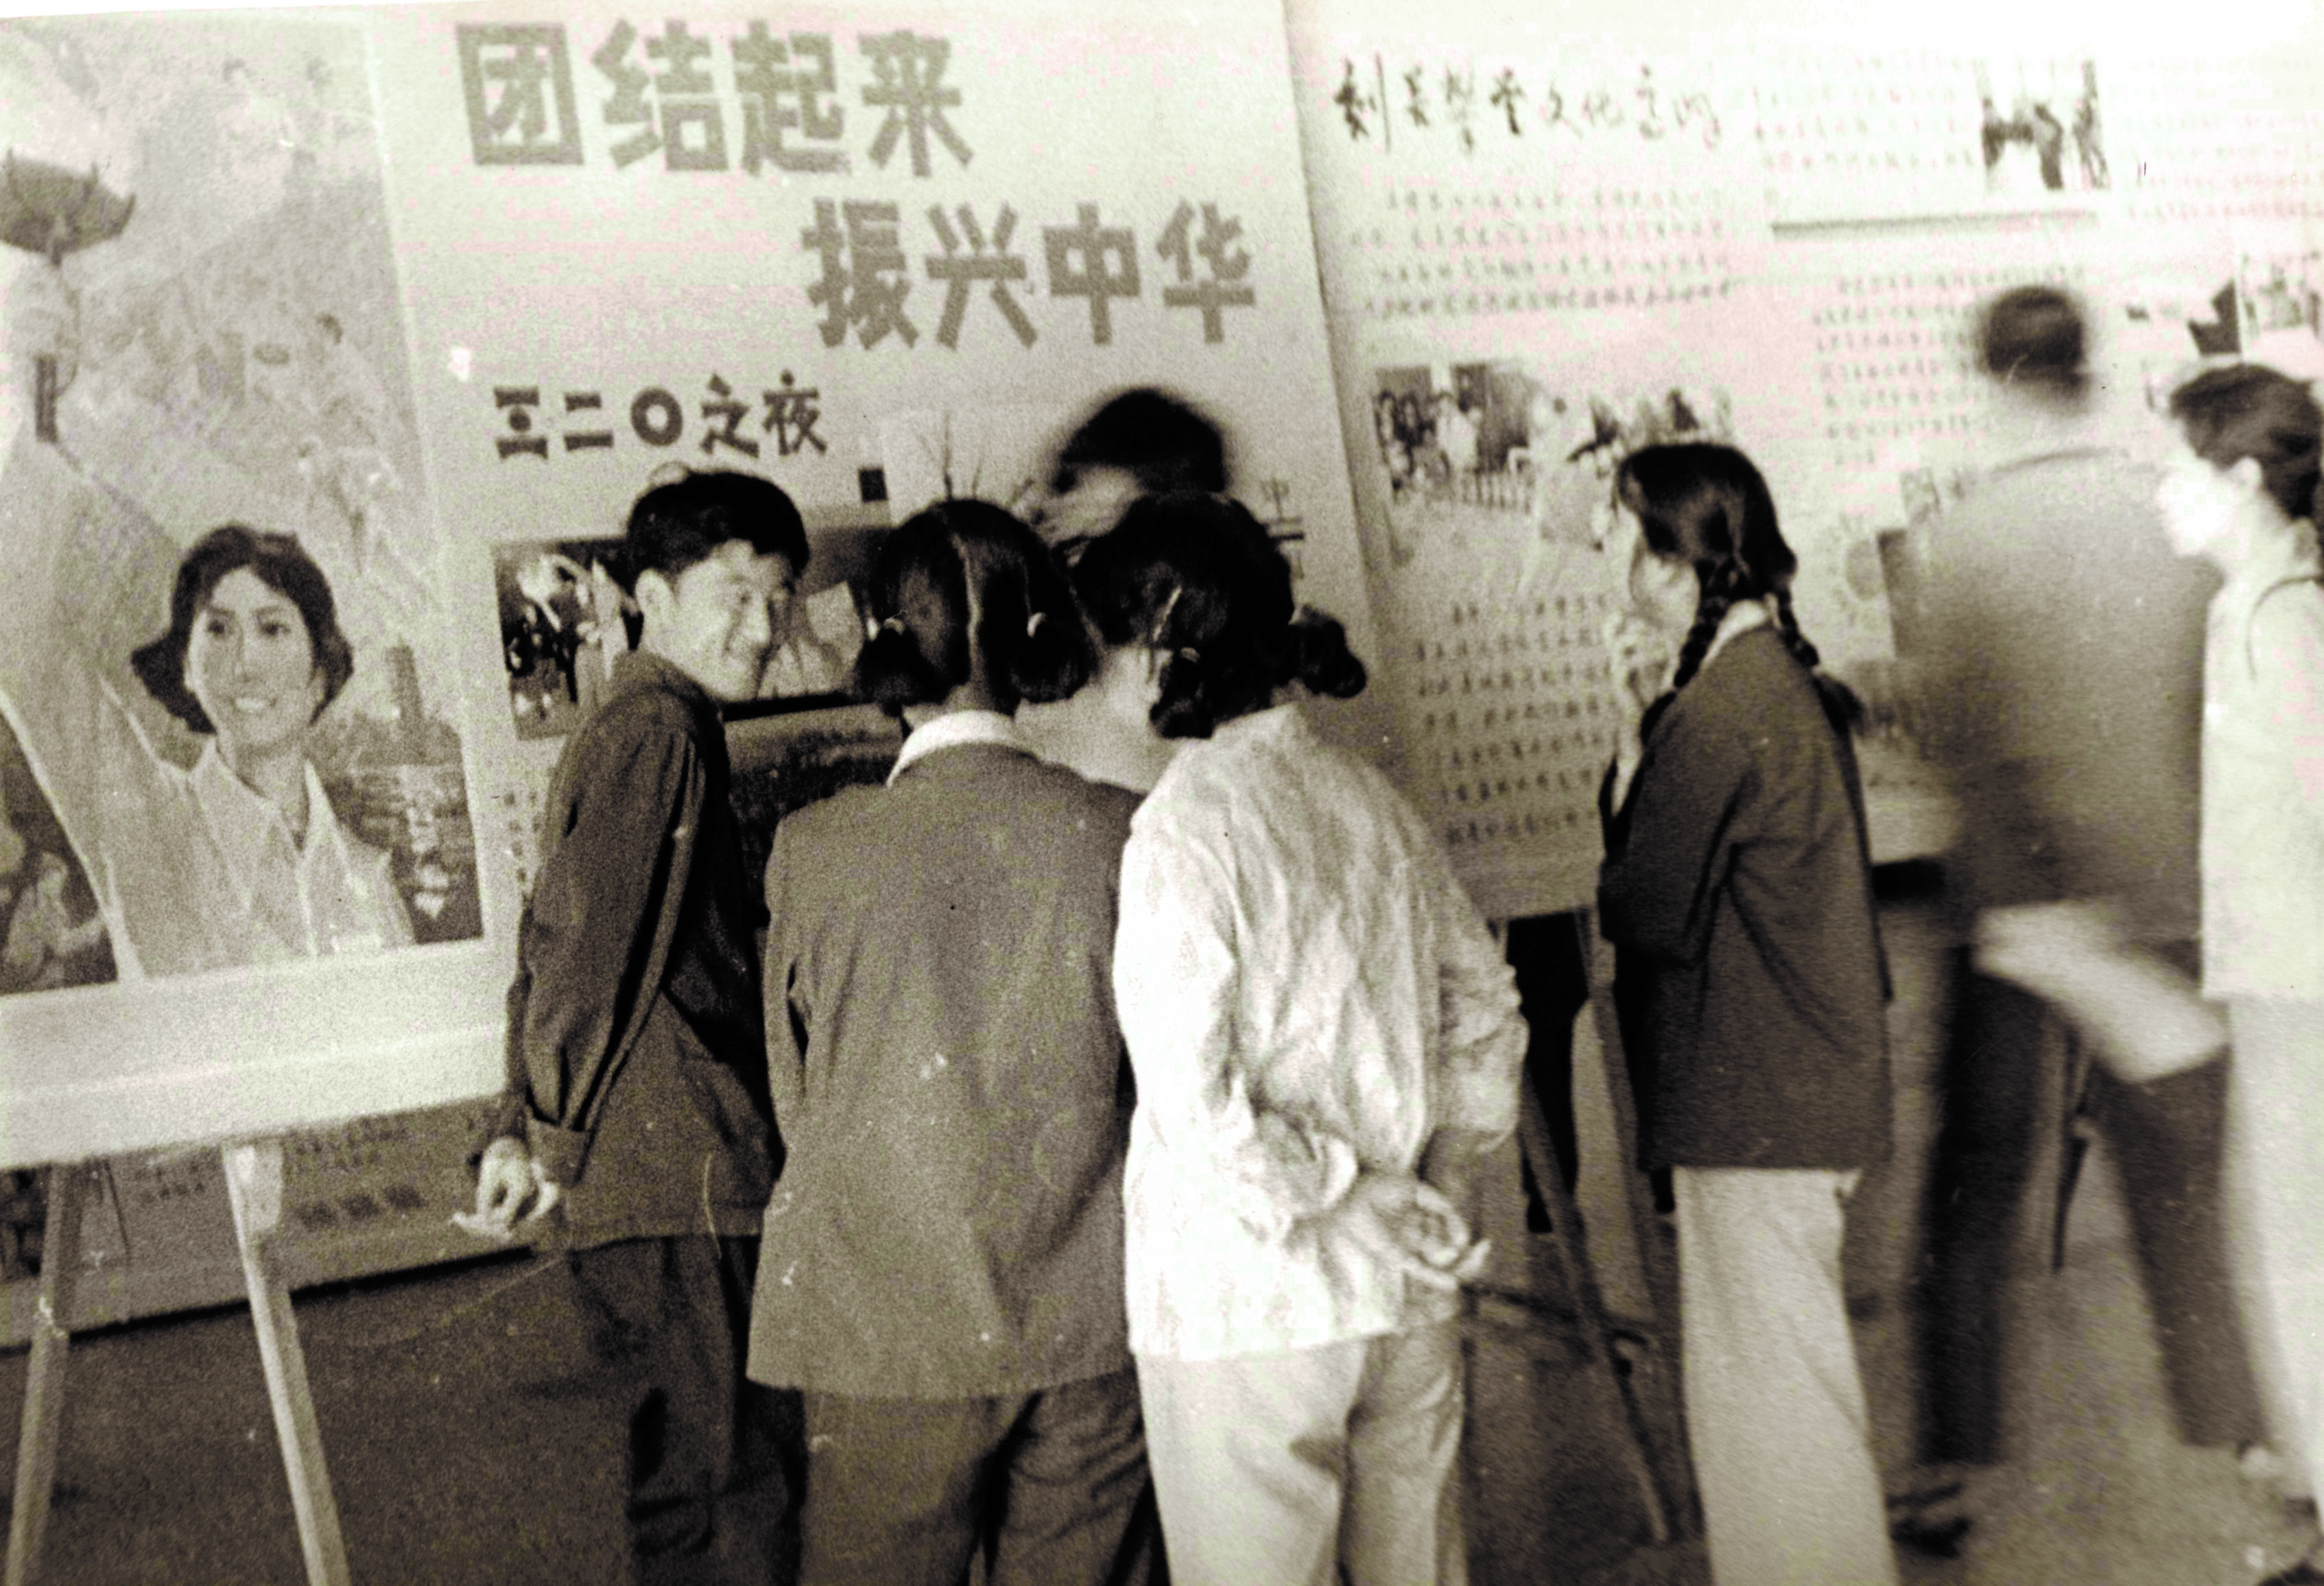 1981年3月20日，中国男子排球队战胜南朝鲜队，取得参加世界杯排球赛的资格，北大校园沸腾了，北大学生喊出了“团结起来，振兴中华”的口号。图为北大学生在海报栏前面热烈议论.jpg